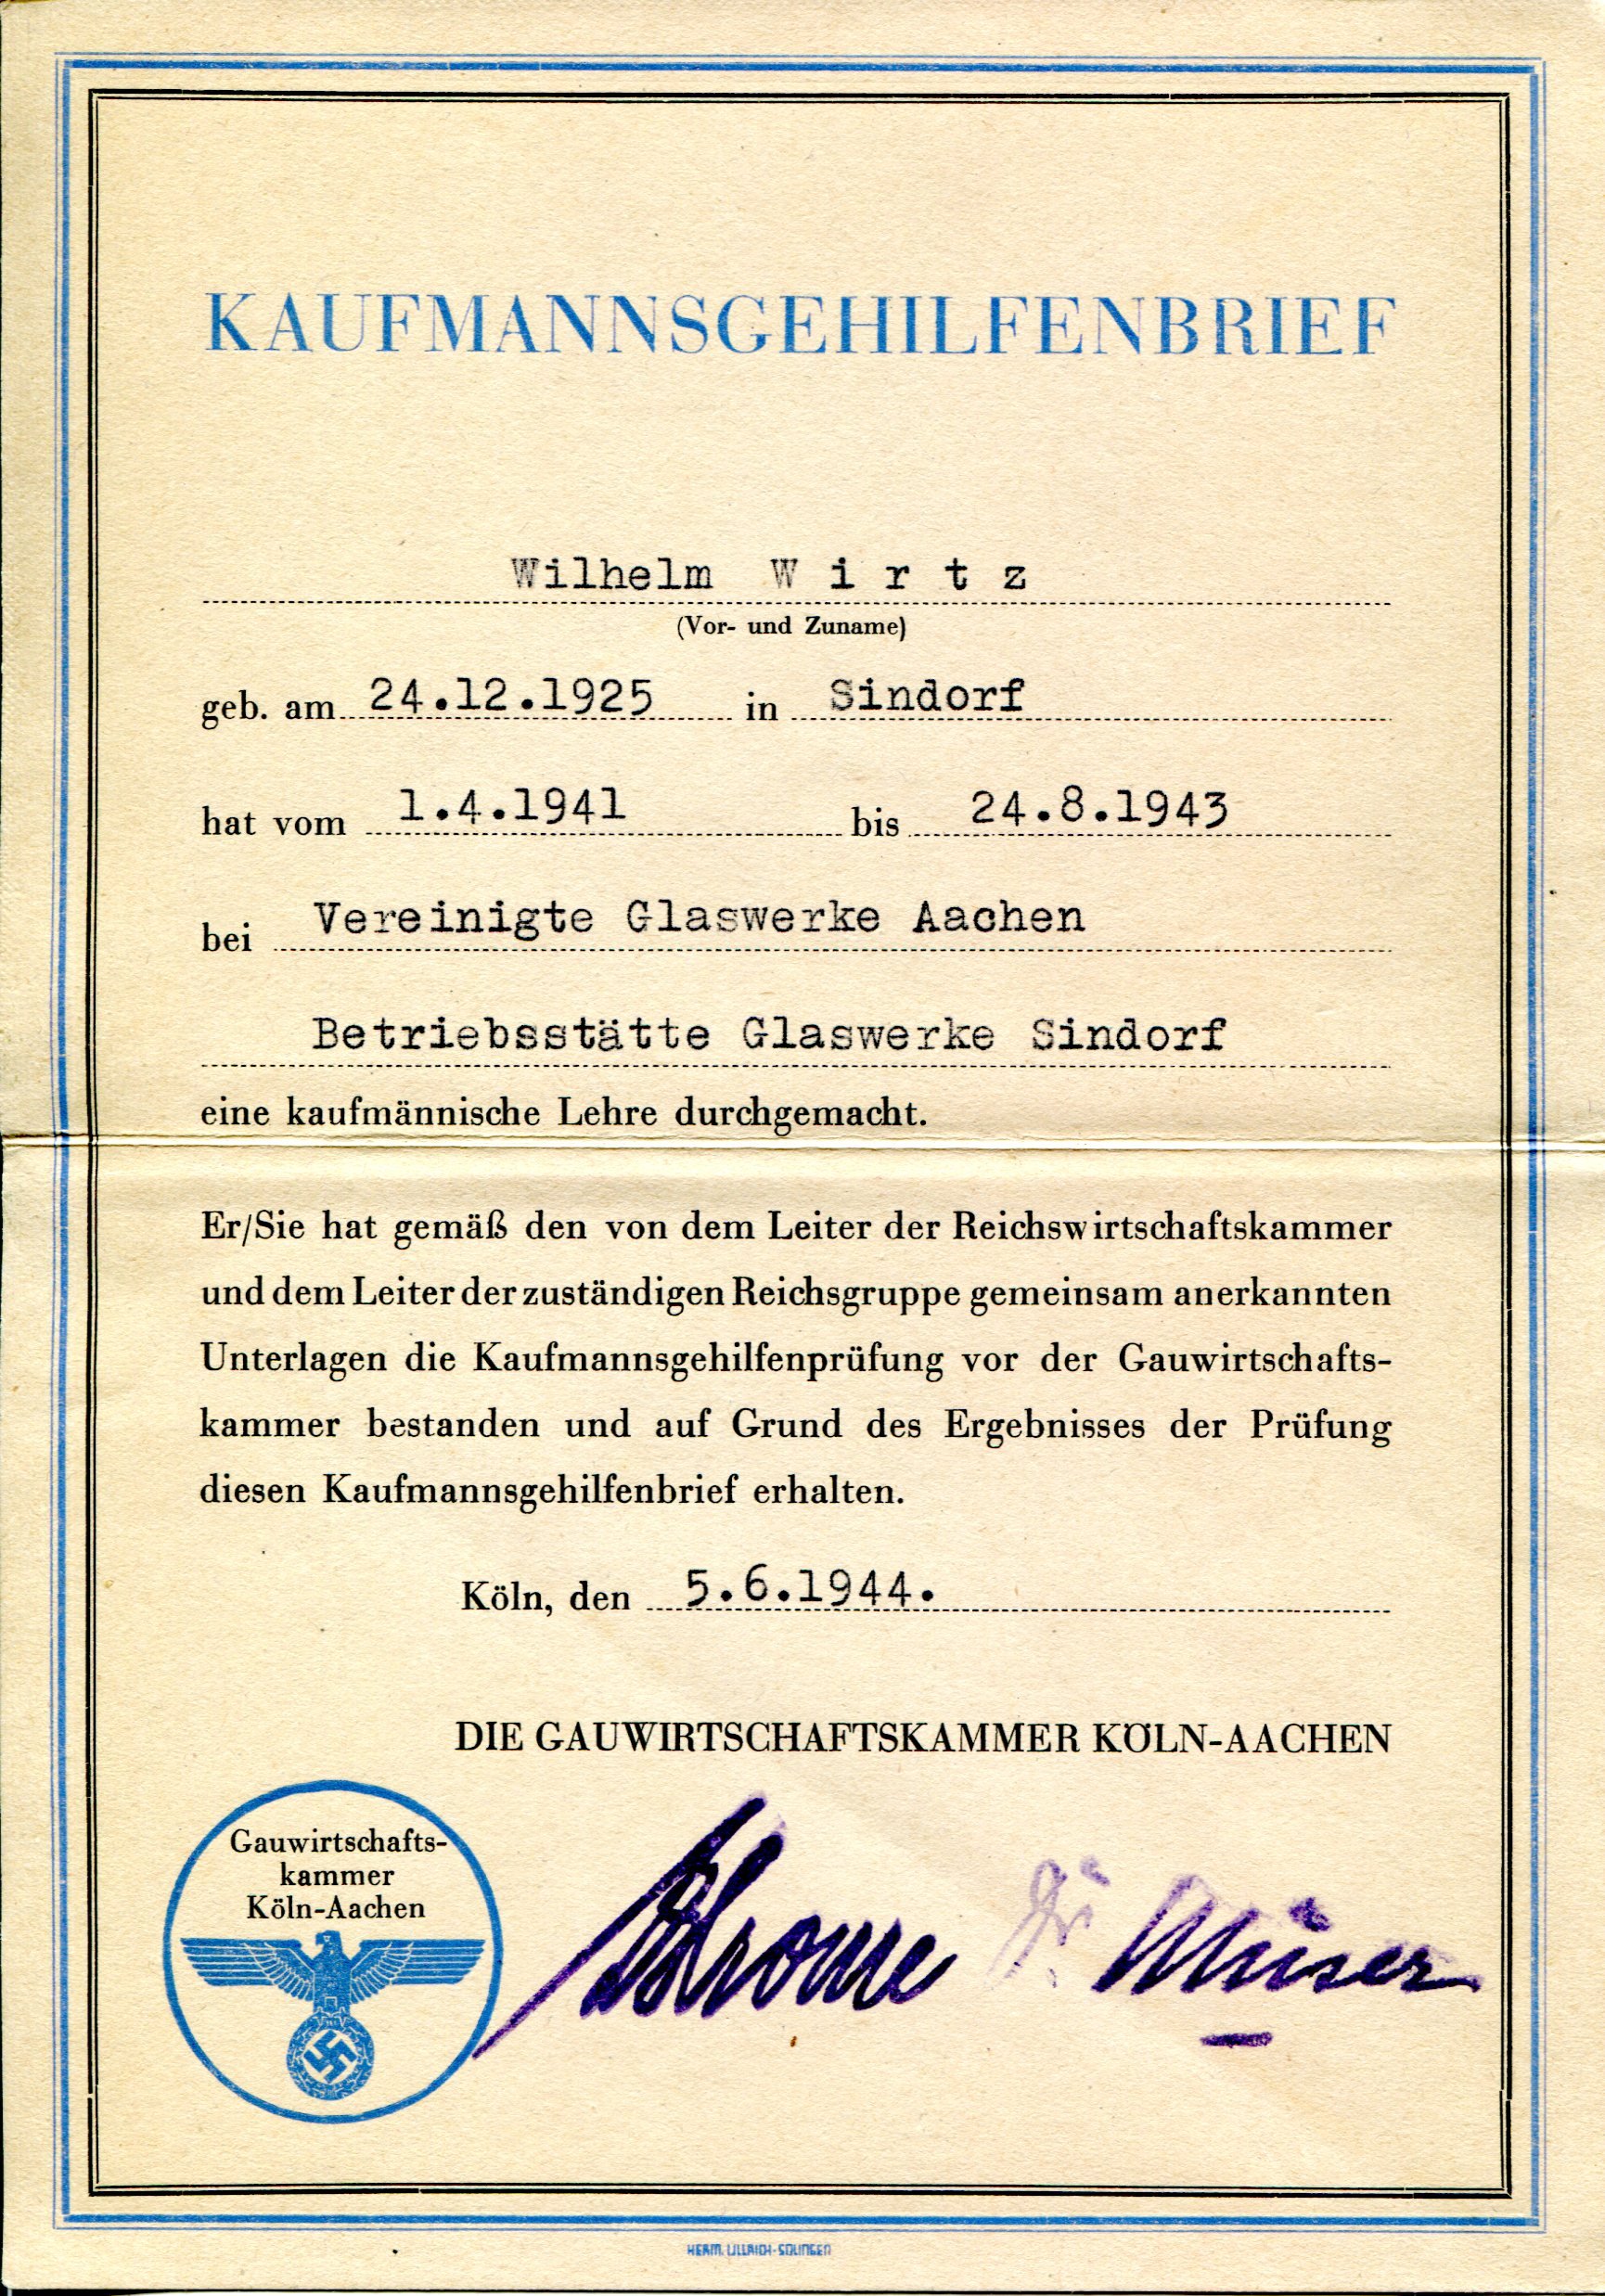 Kaufmannsgehilfenbrief | Wilhelm Wirtz | 1944 (Heimatmuseum Sindorf CC BY-NC-SA)